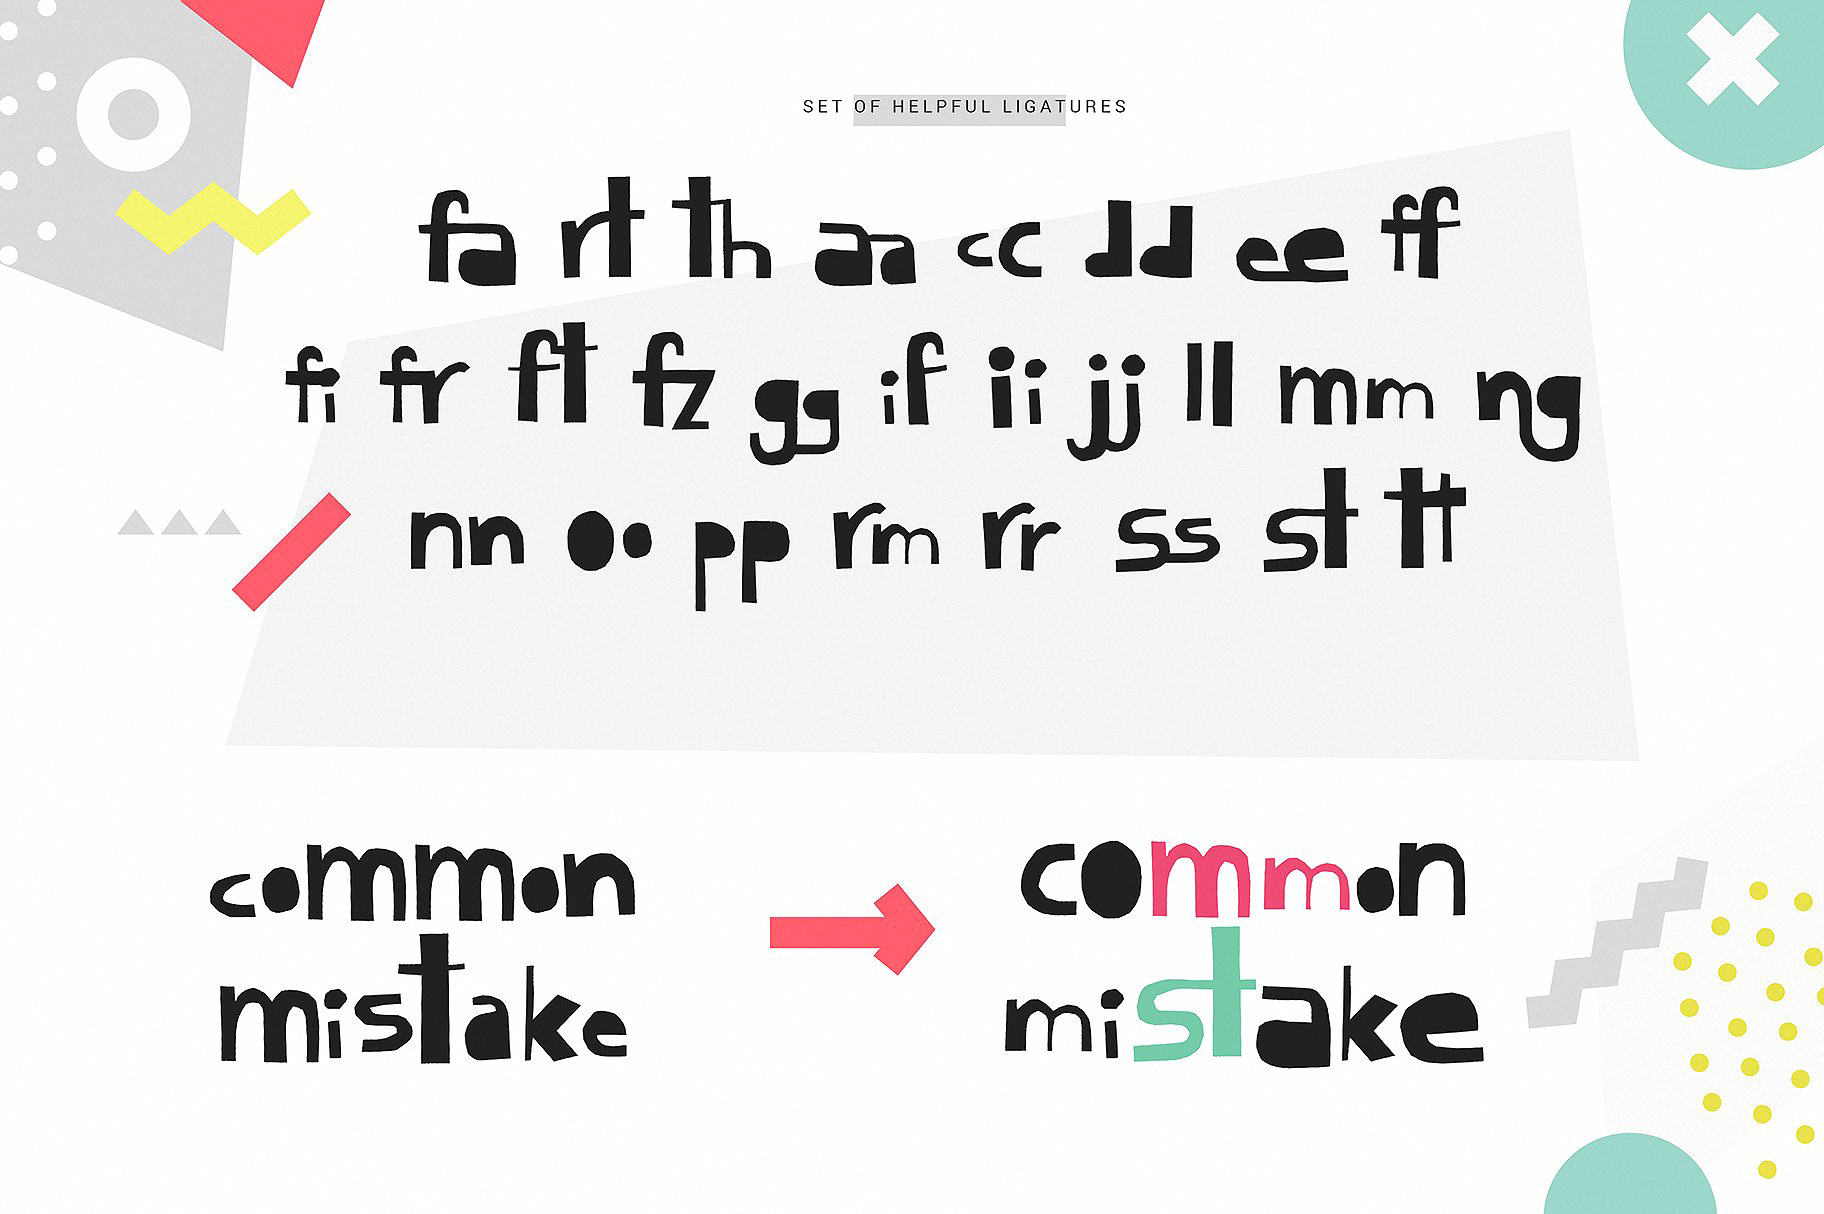 Пример шрифта Cutout New Symbols